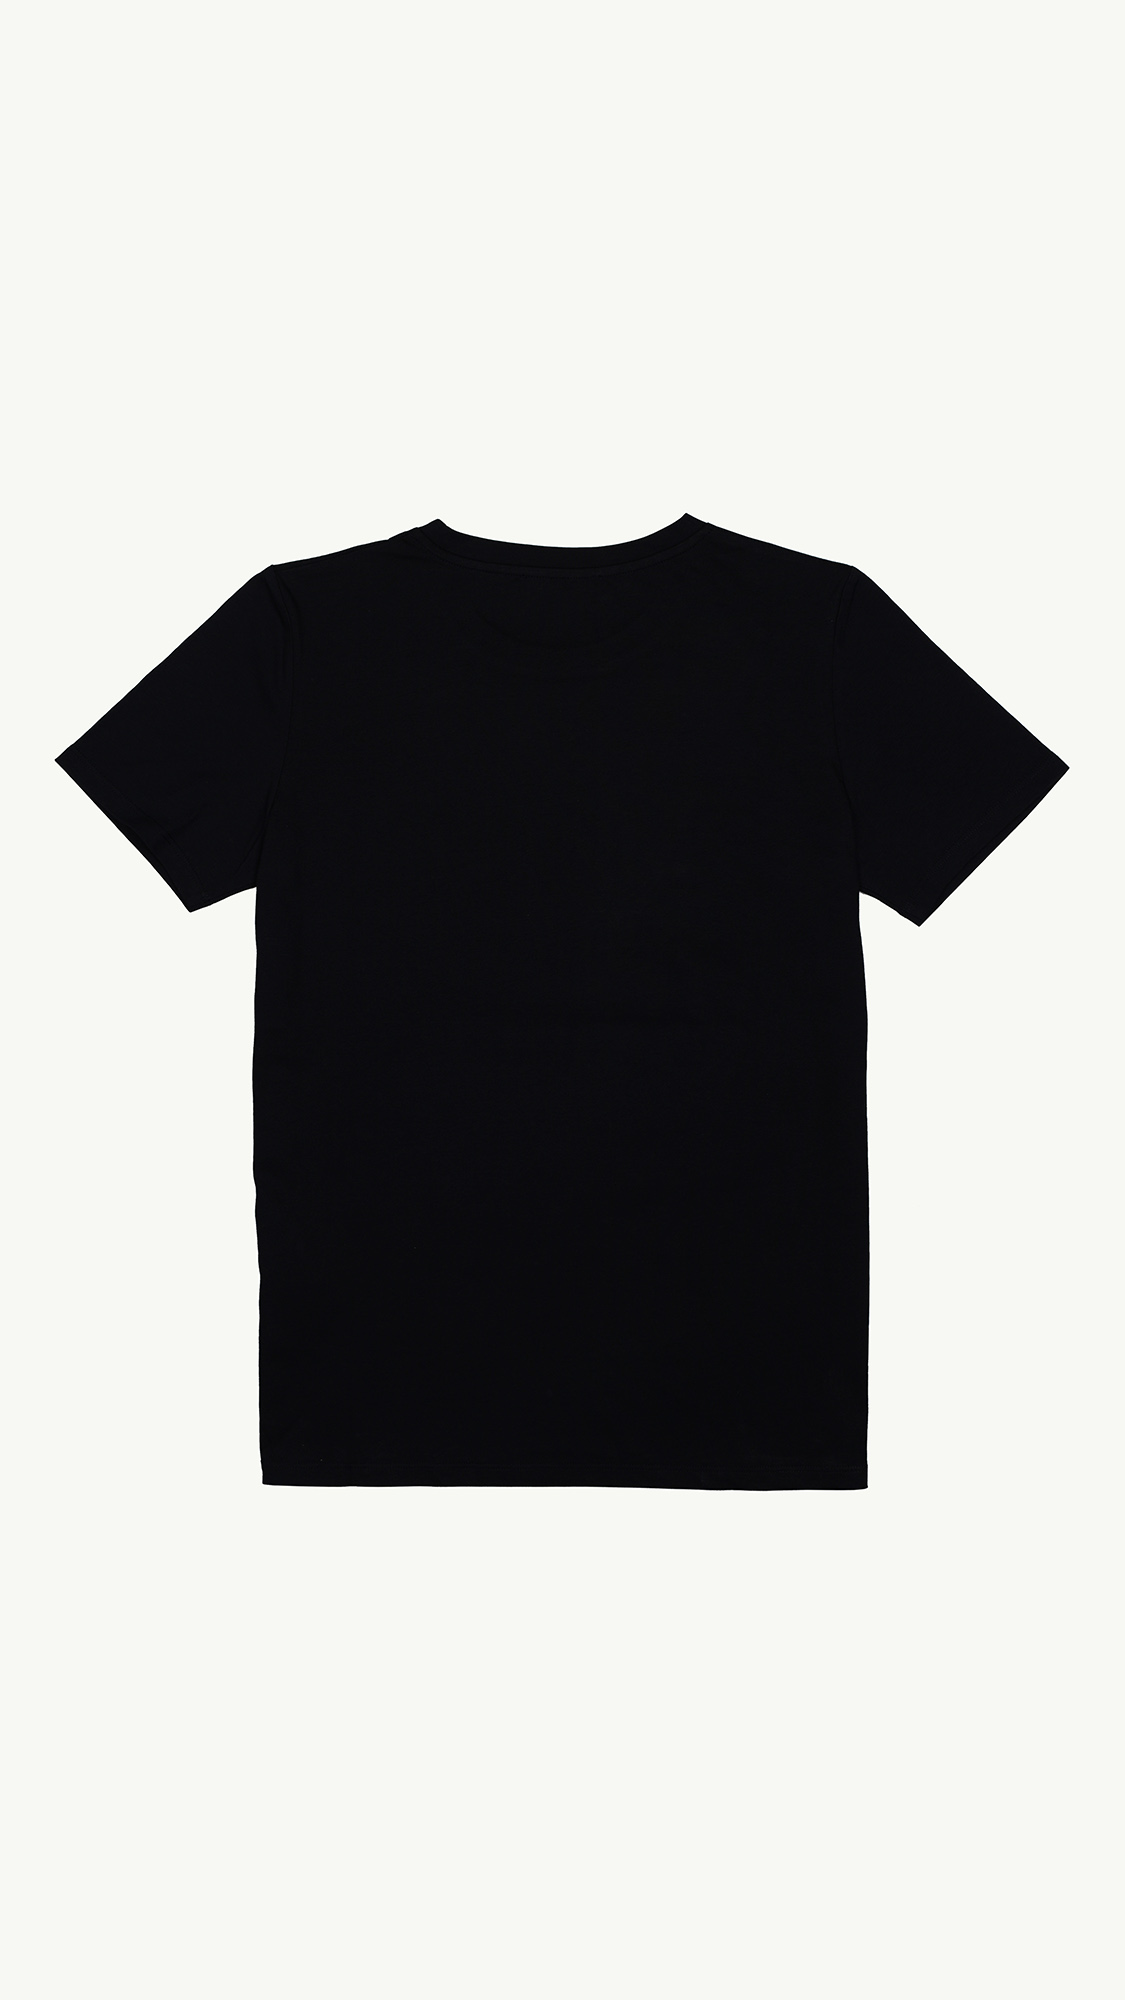 BALMAIN Women Balmain Paris Flocked Suede Logo T-Shirt in Black/White 1